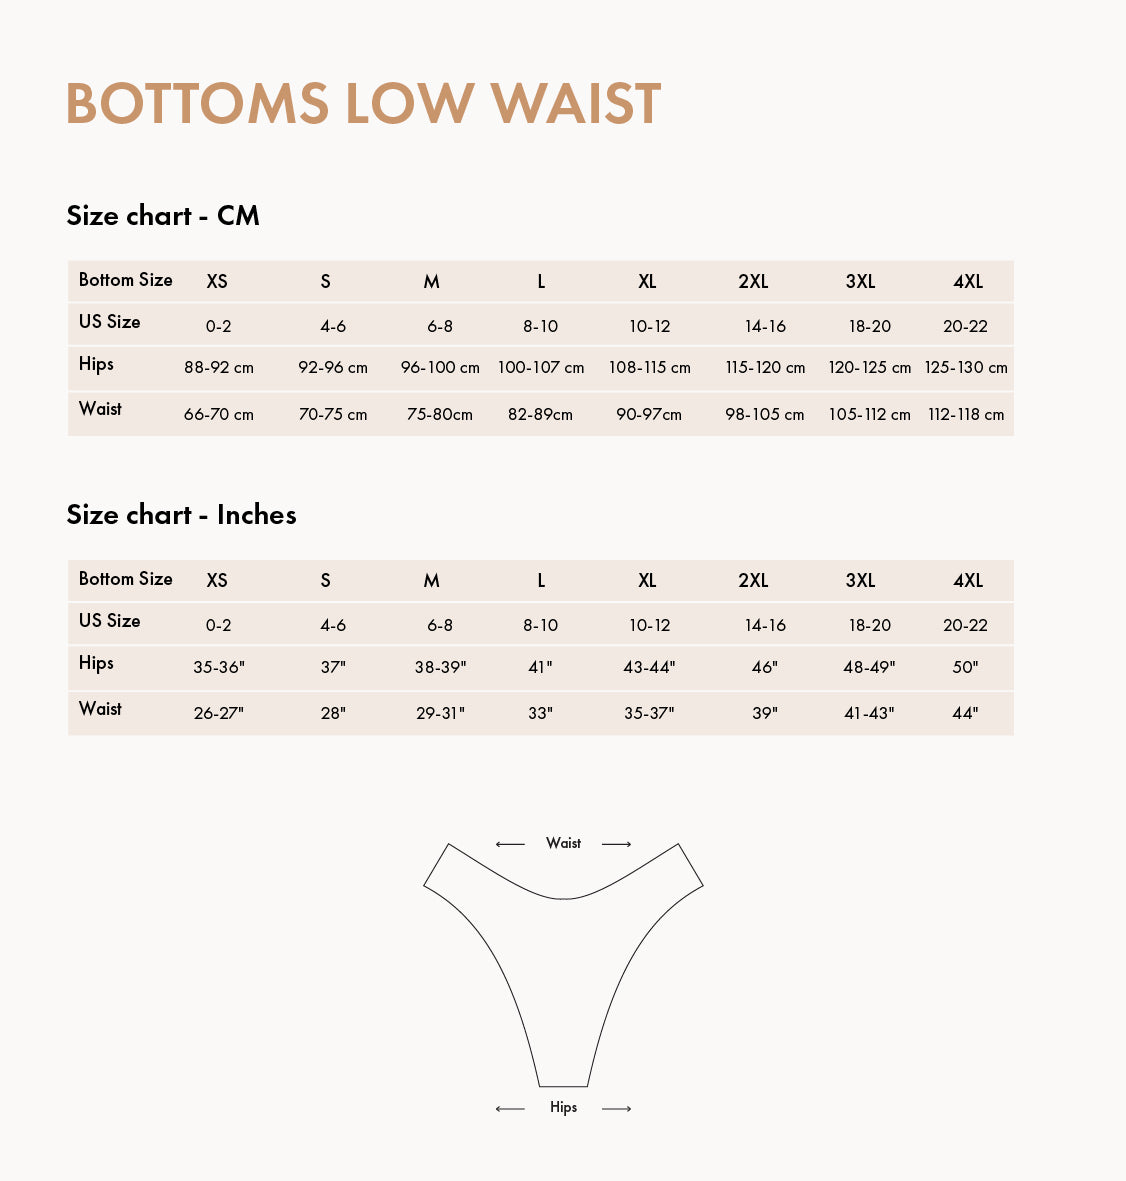 Biliblond low waist bottoms size chart